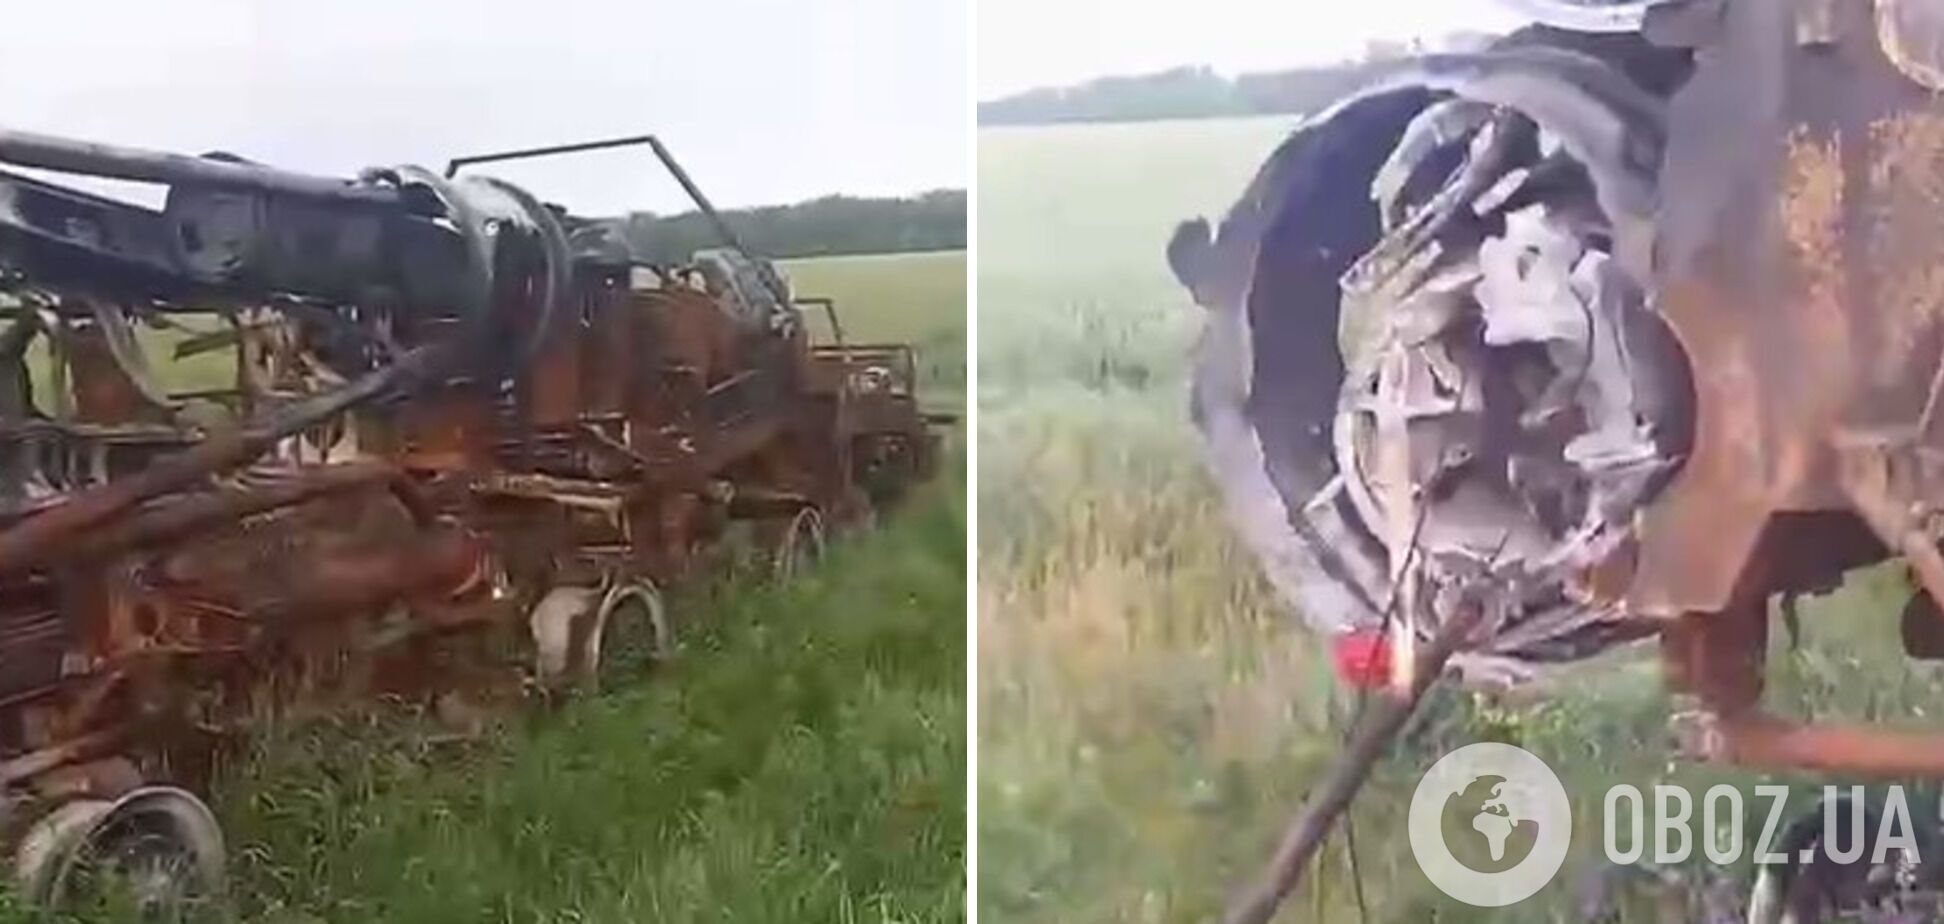 Защитники Украины уничтожили вражеский ЗРК С-300 на ходу: видео попало в сеть